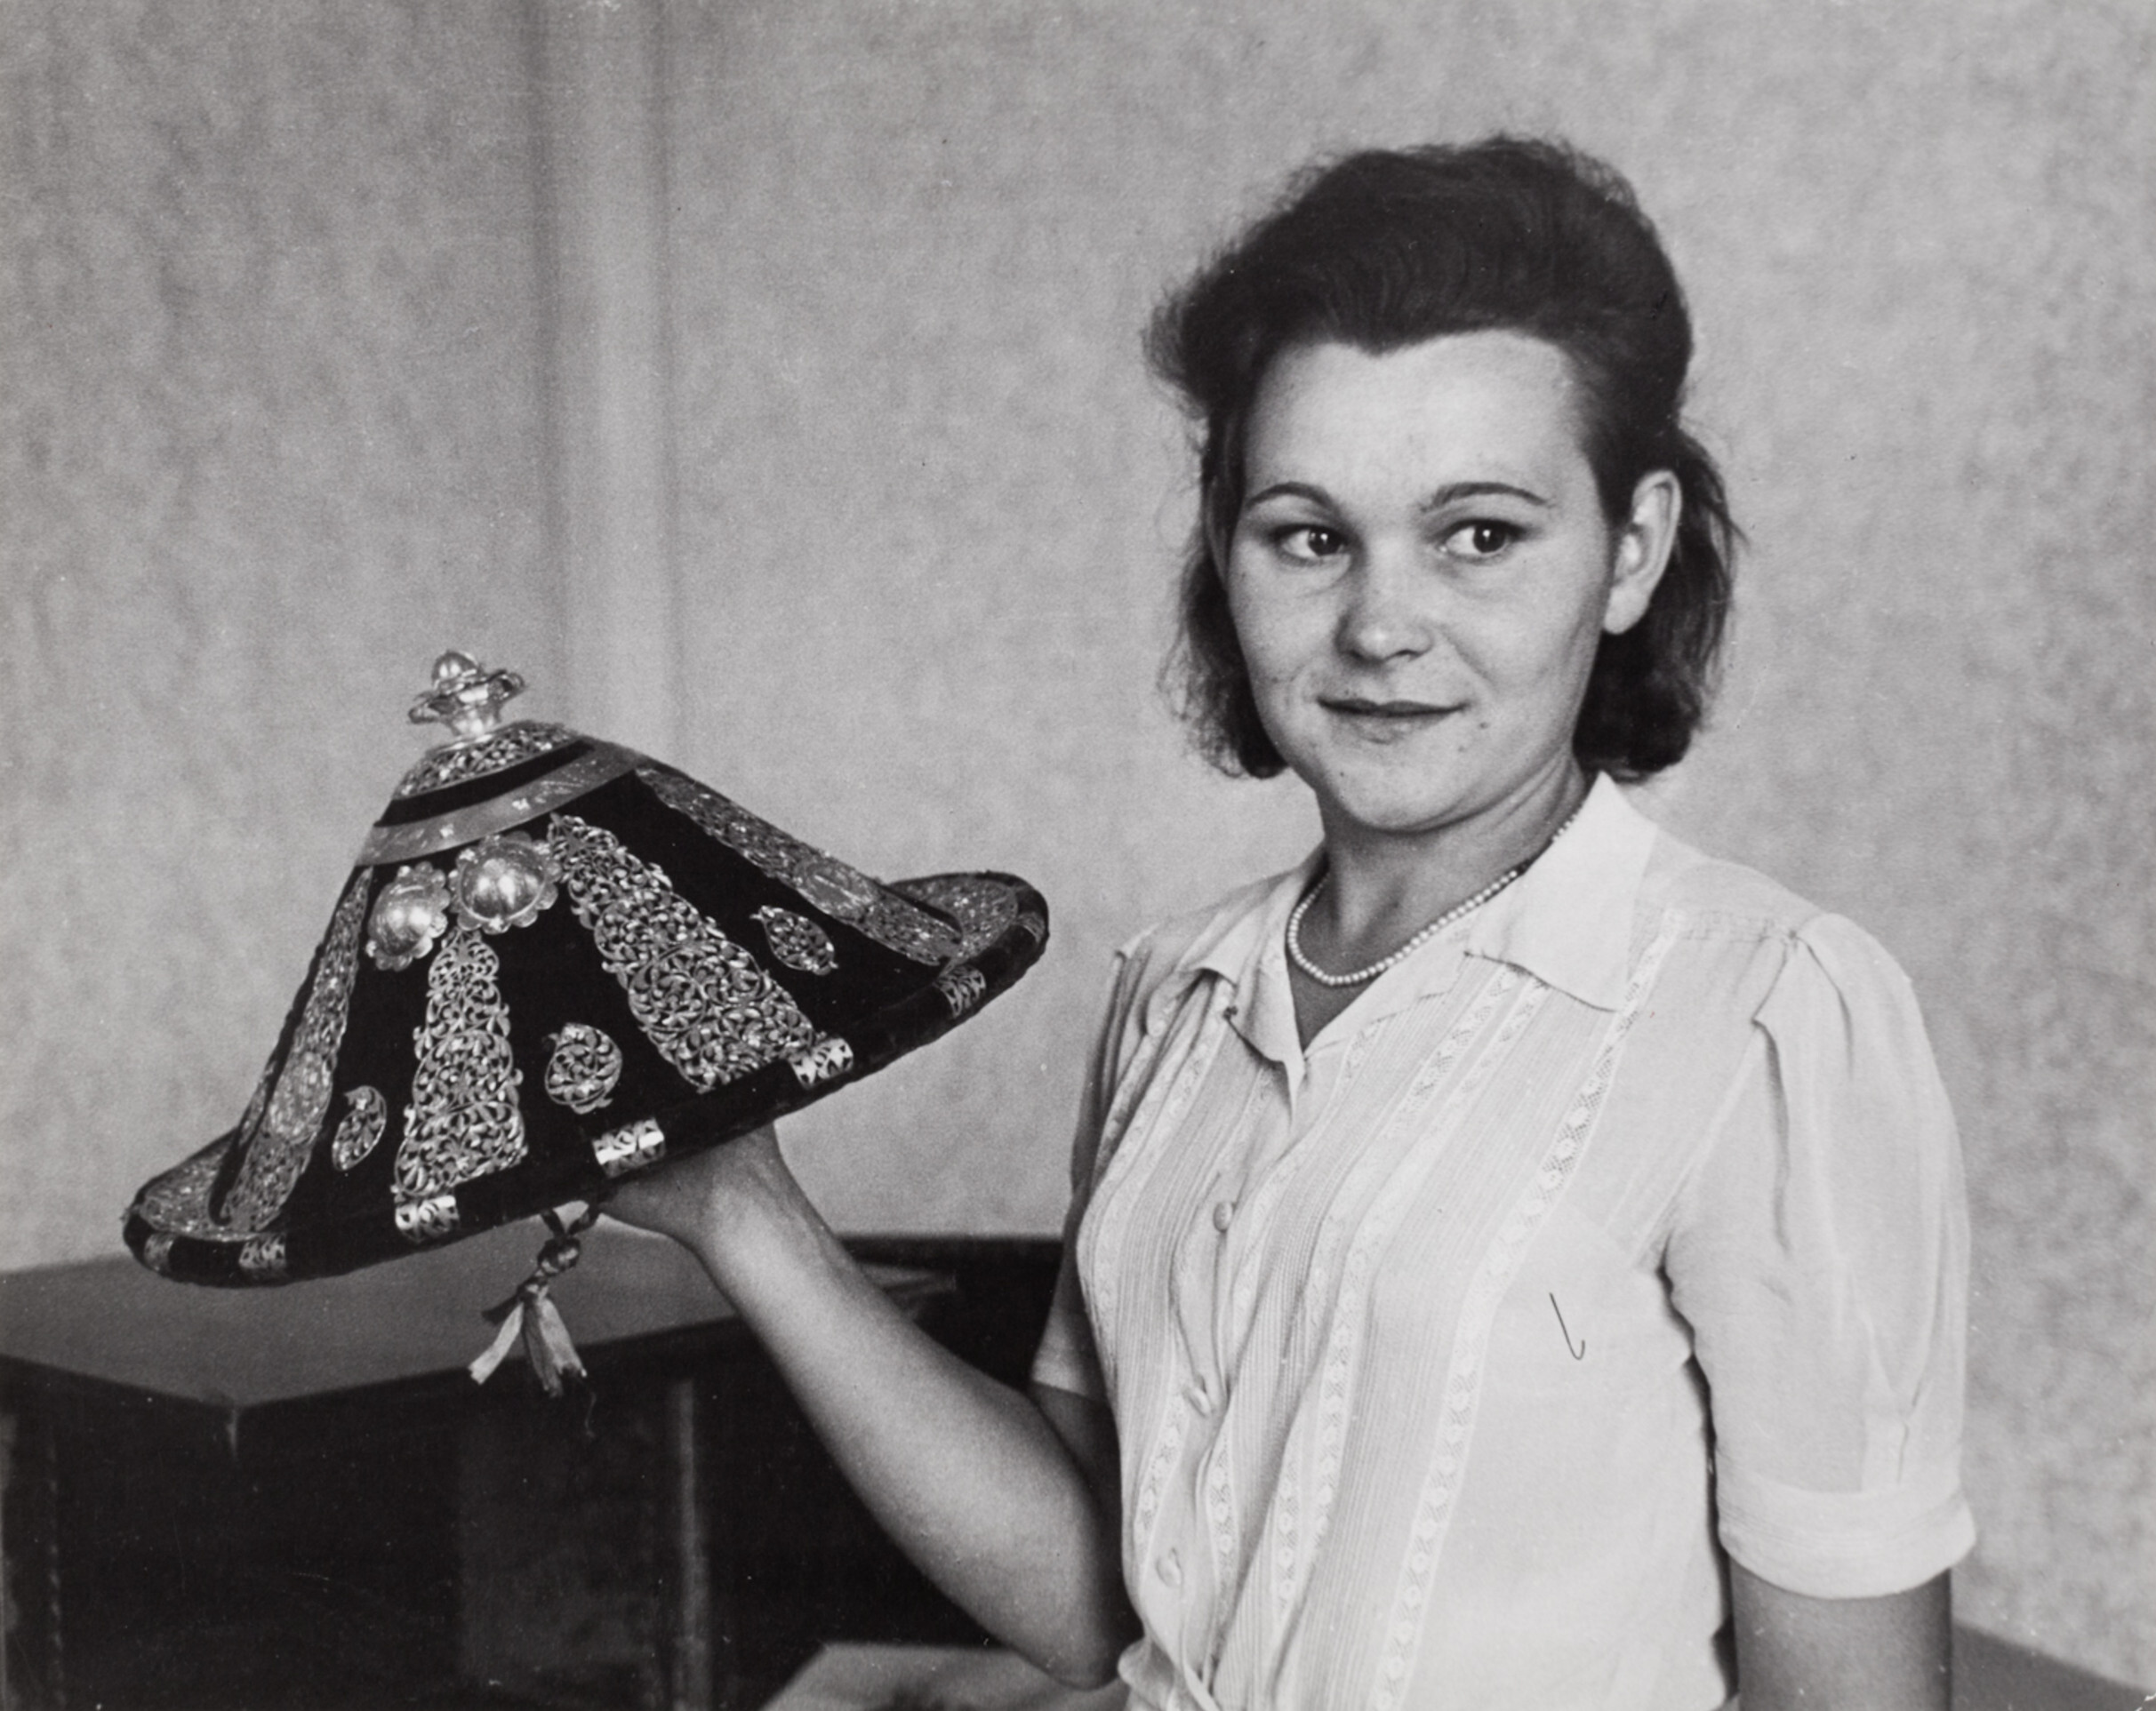 Молодая женщина с головным убором в музее, Россия, 1947 год. Фотограф Роберт Капа